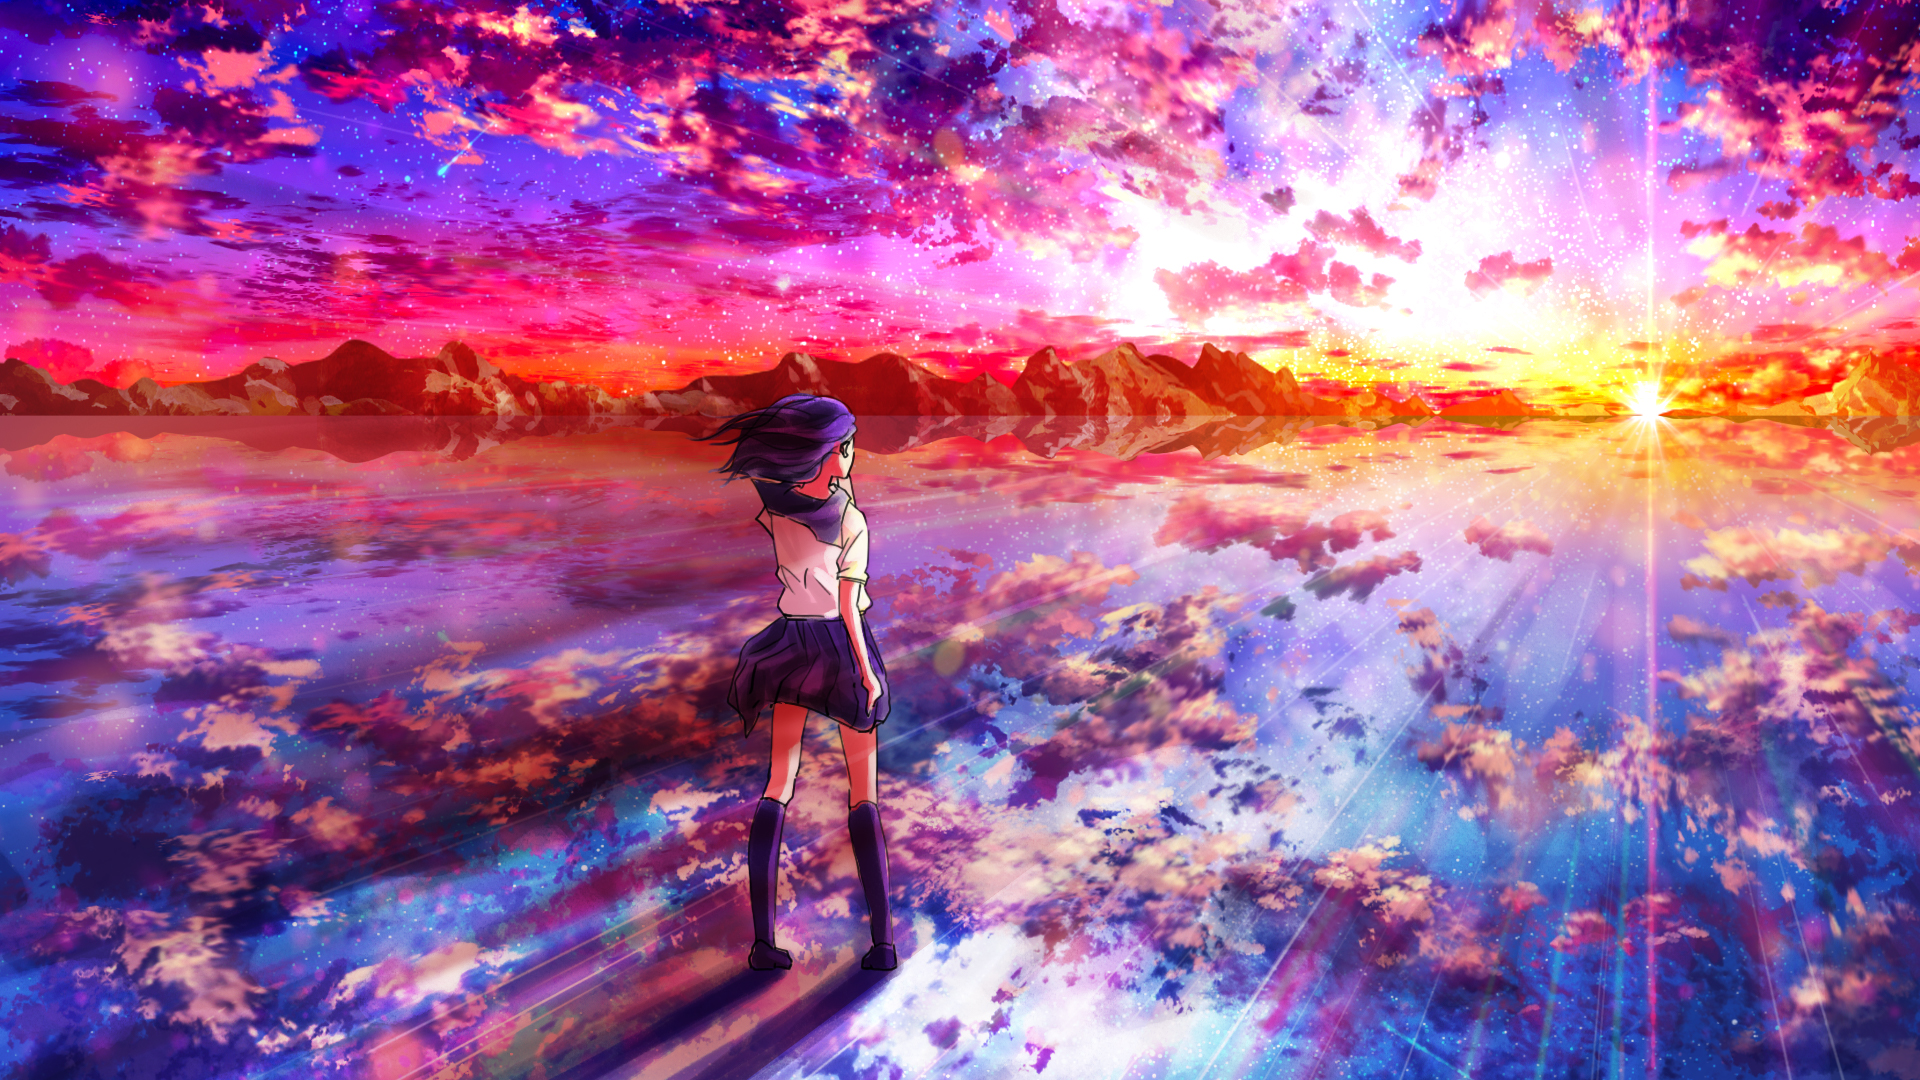 Anime Girl School Uniform Student Sunset Scenery 4K Wallpaper #6.1294